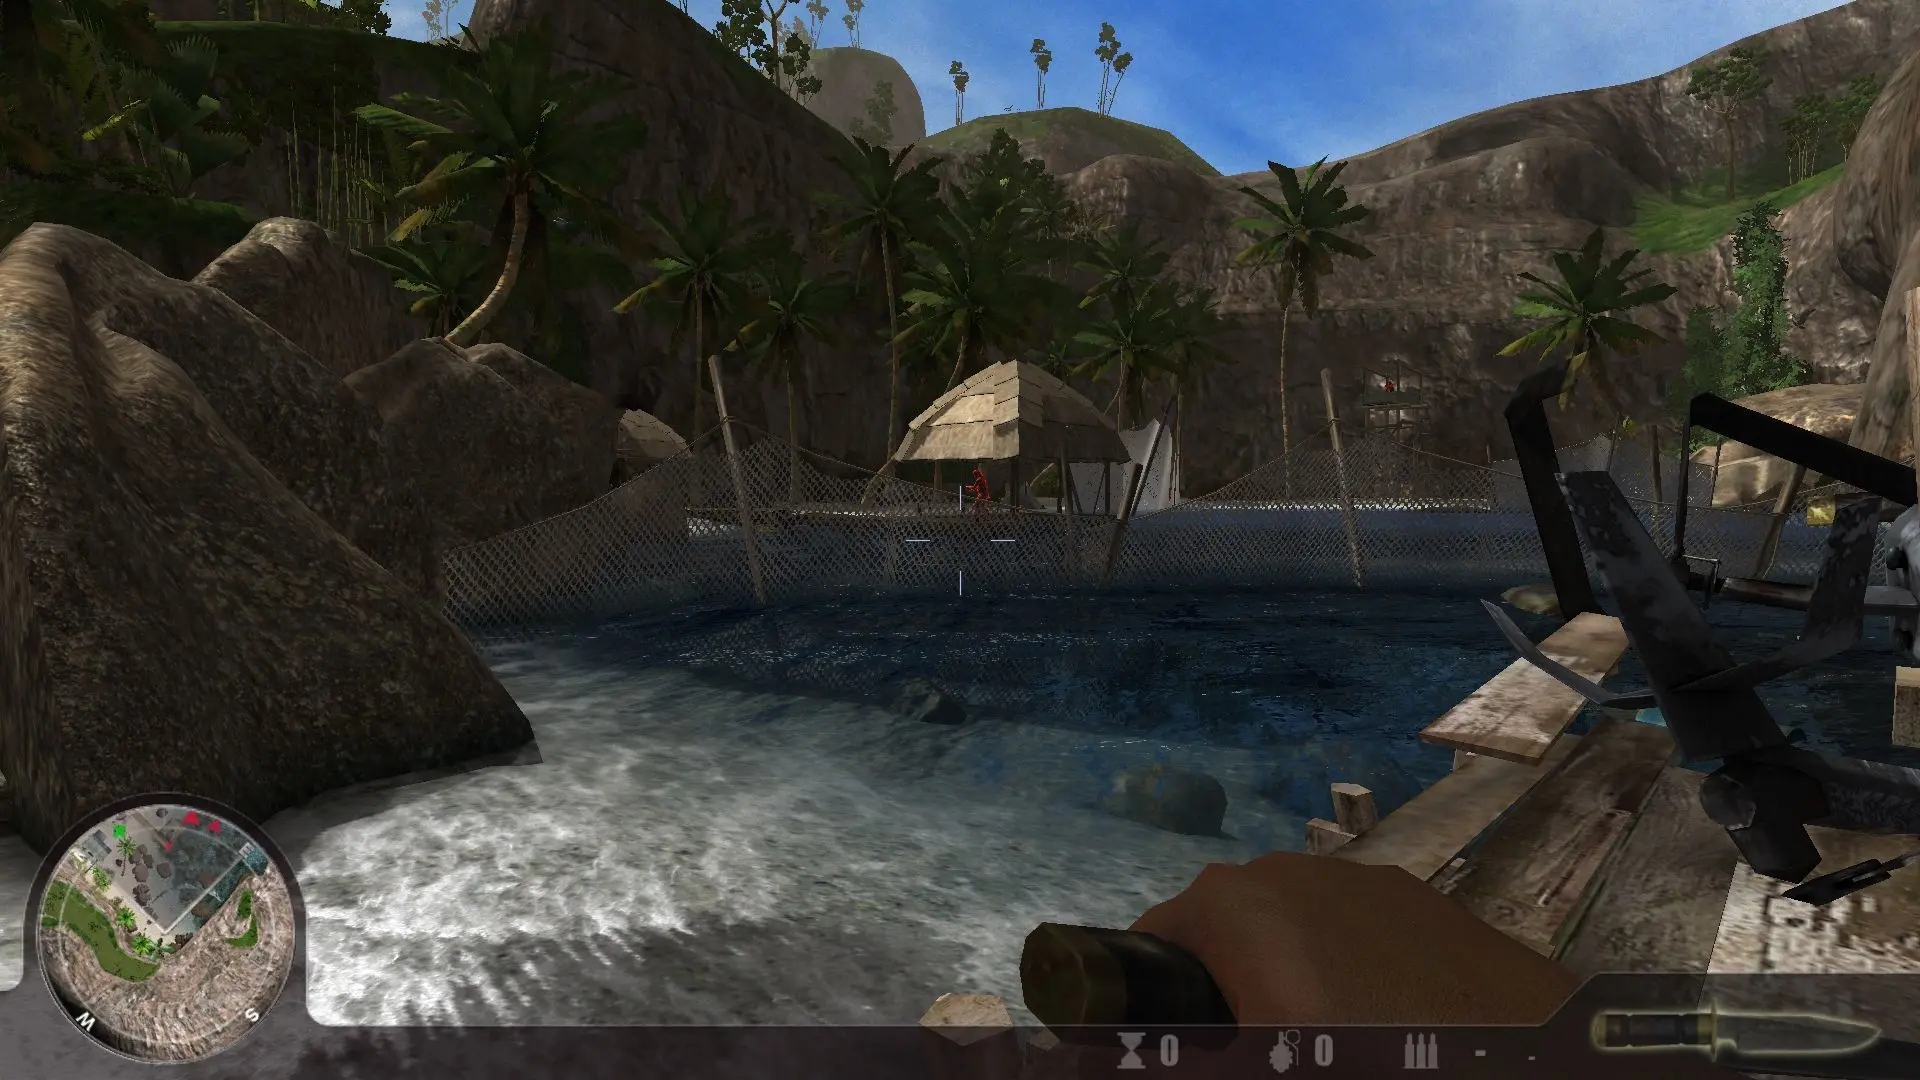 دانلود بازی Pirate Hunter 2010 برای کامپیوتر PC